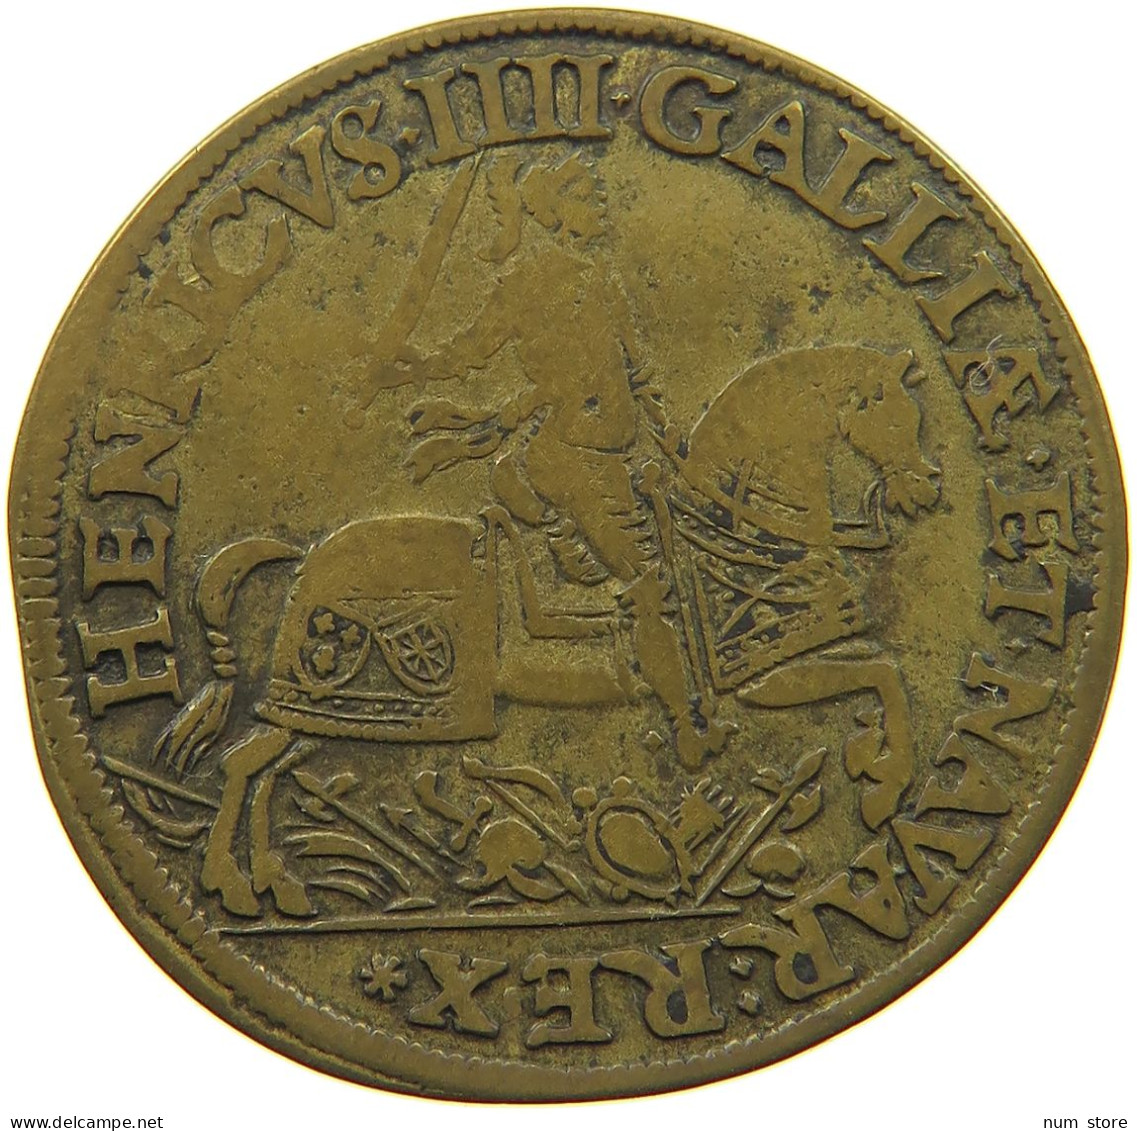 FRANCE JETON 1596 JETON 1596 HENRI IV. 27MM #t153 0145 - 1589-1610 Henri IV Le Vert-Galant